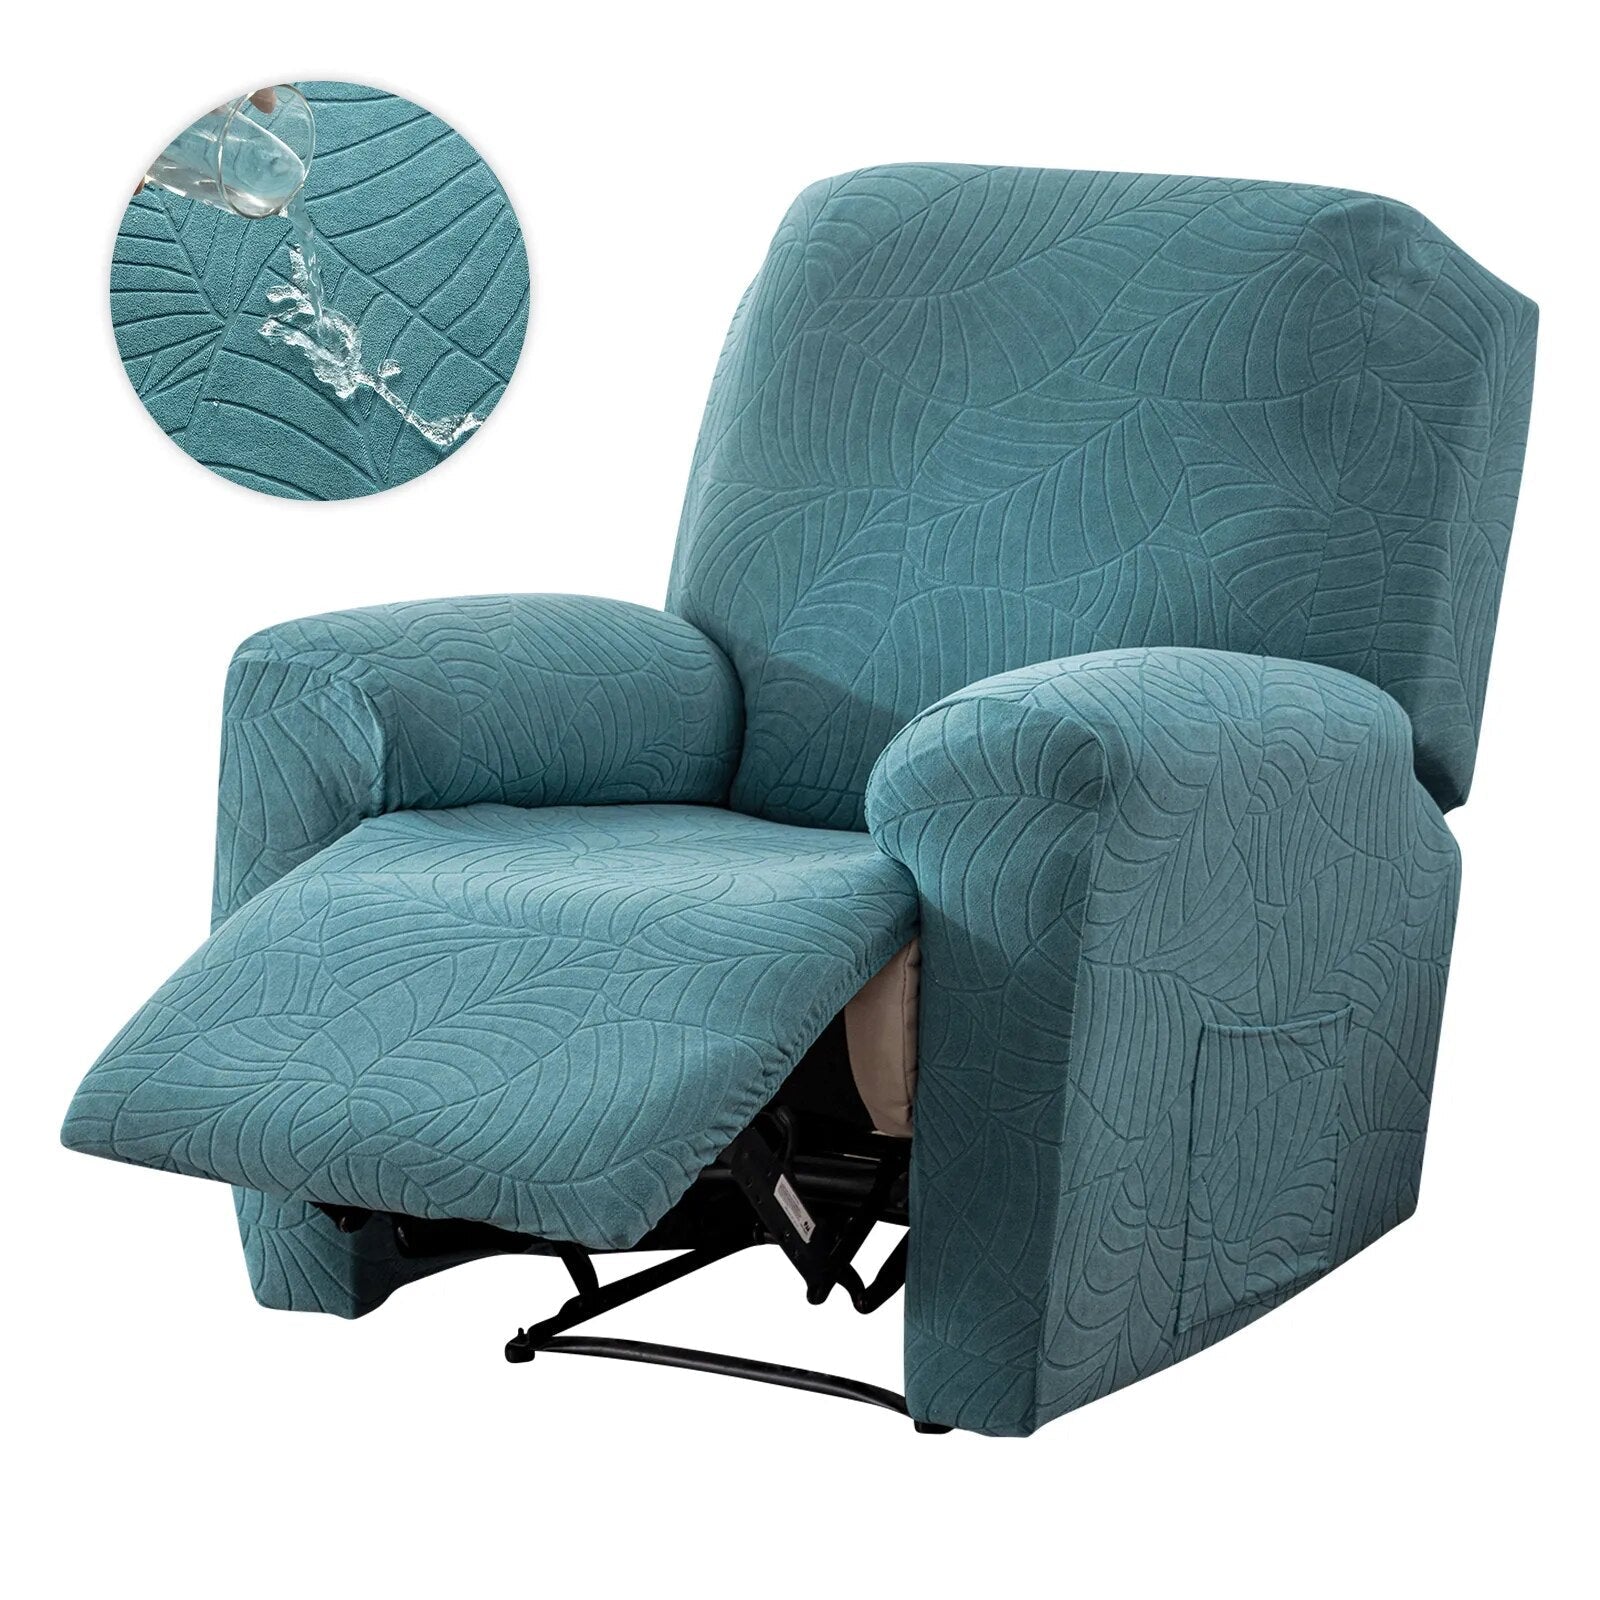 Housse de fauteuil relax imperméable bleue ciel Casaharmony